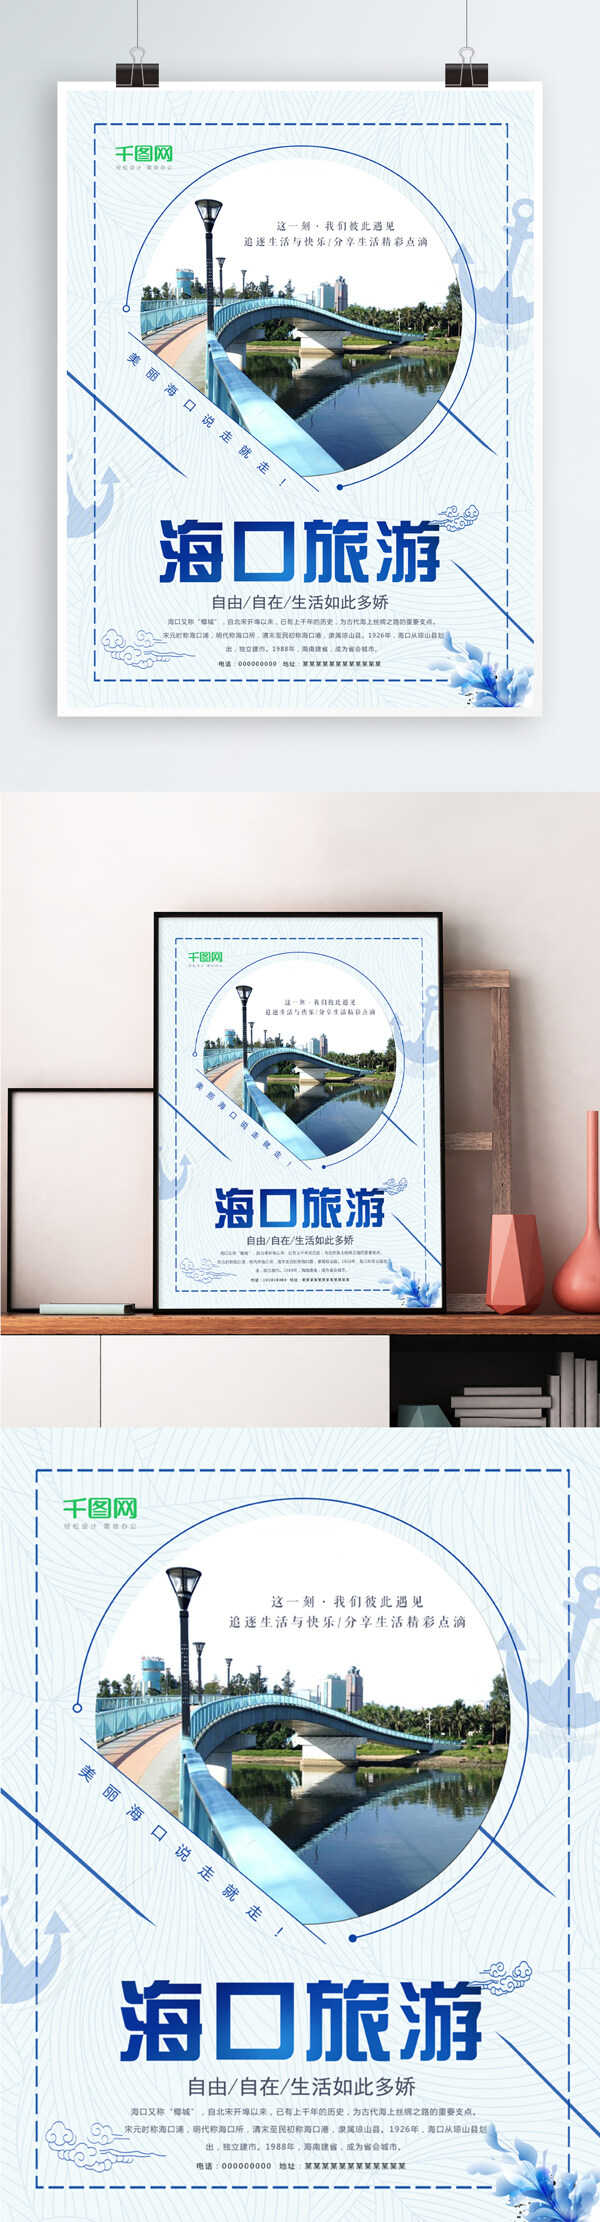 蓝色清新简约海南海口旅行社宣传旅游海报